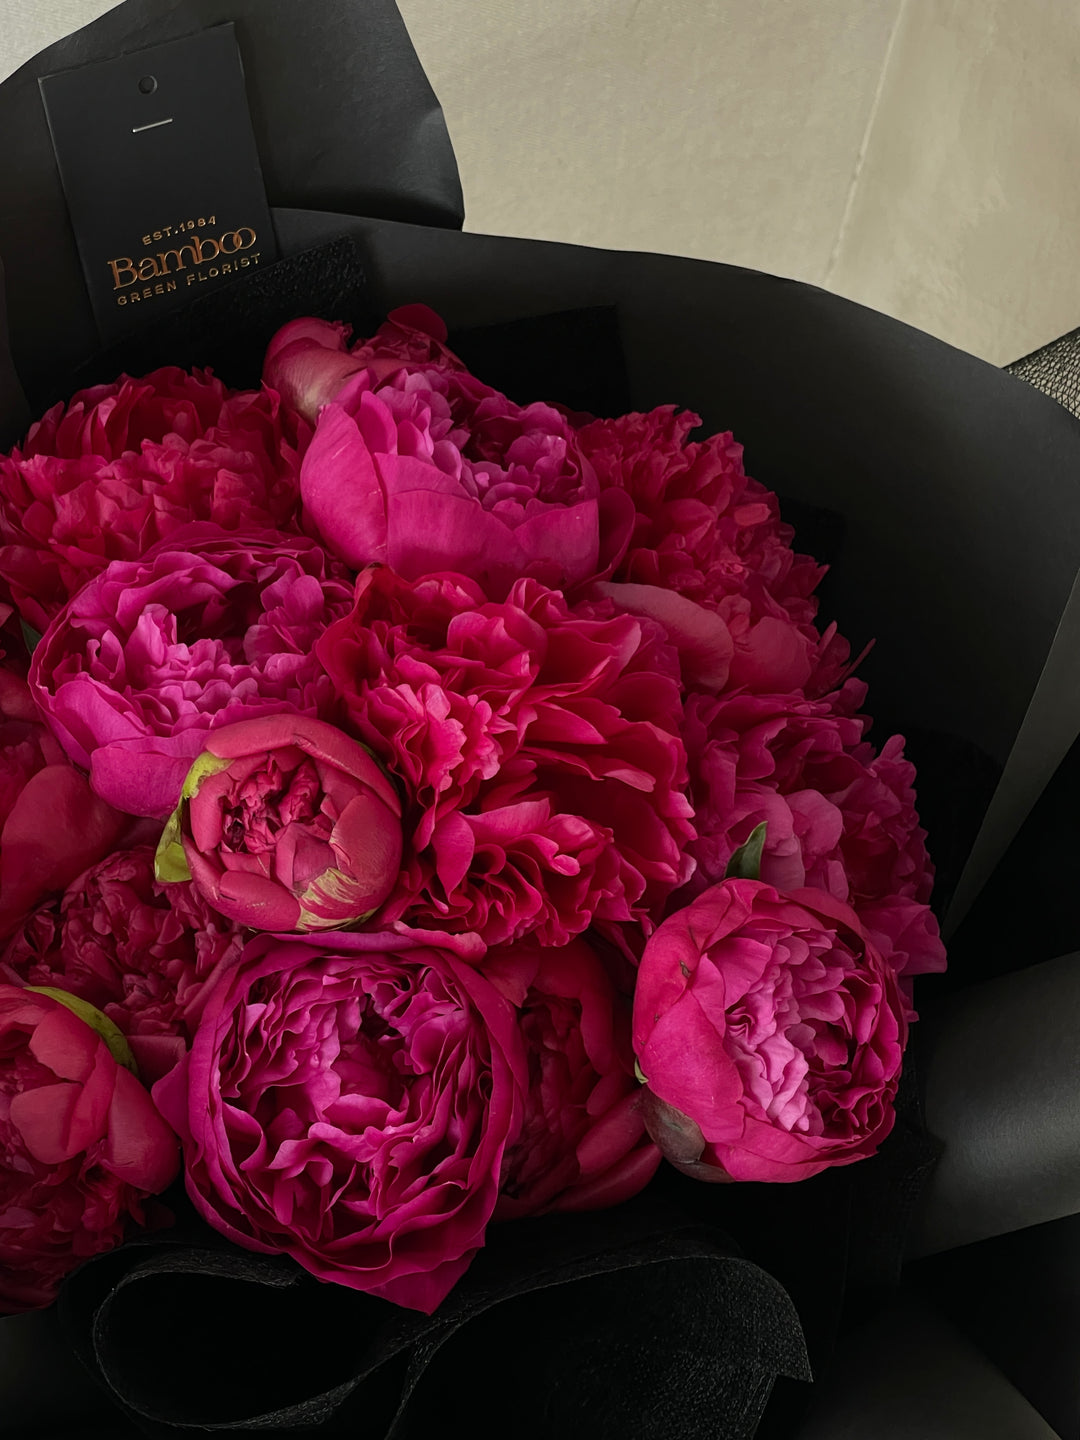 customised flower bouquet in pink seasonal peonies